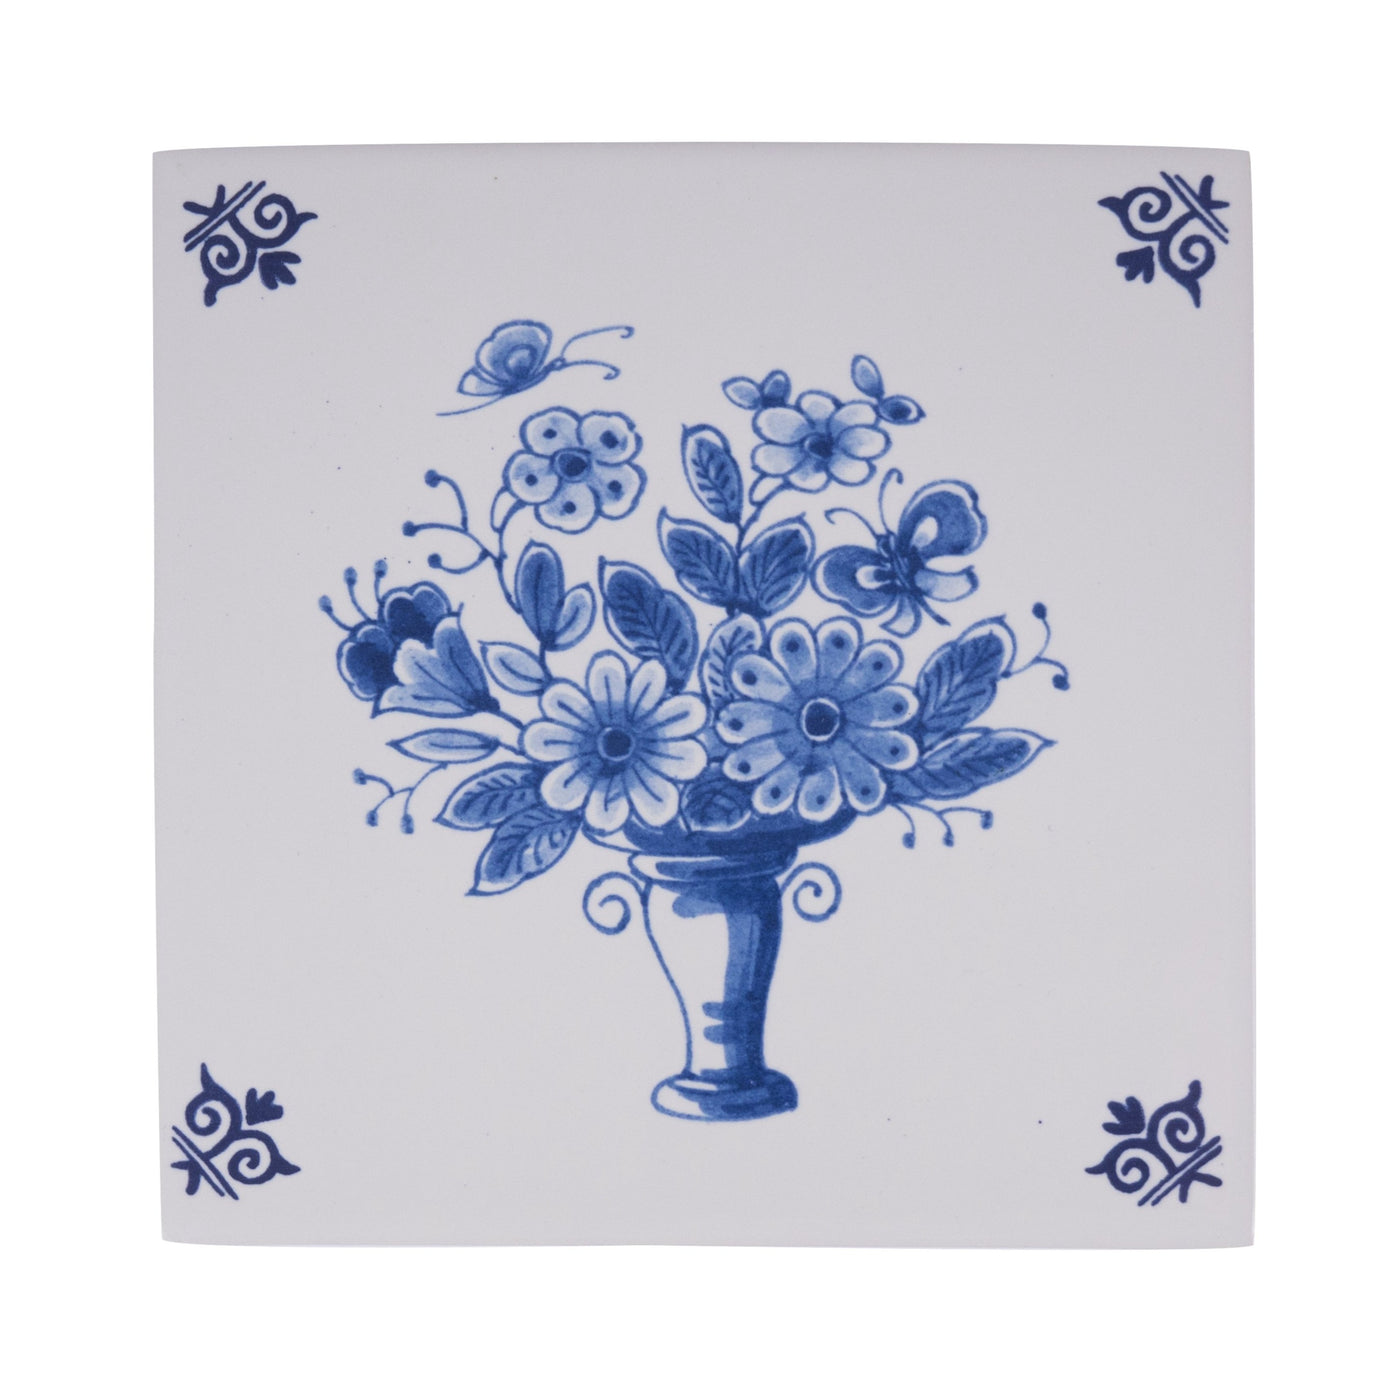 Tile Flower Basket (805) Delft Blue by Royal Delft